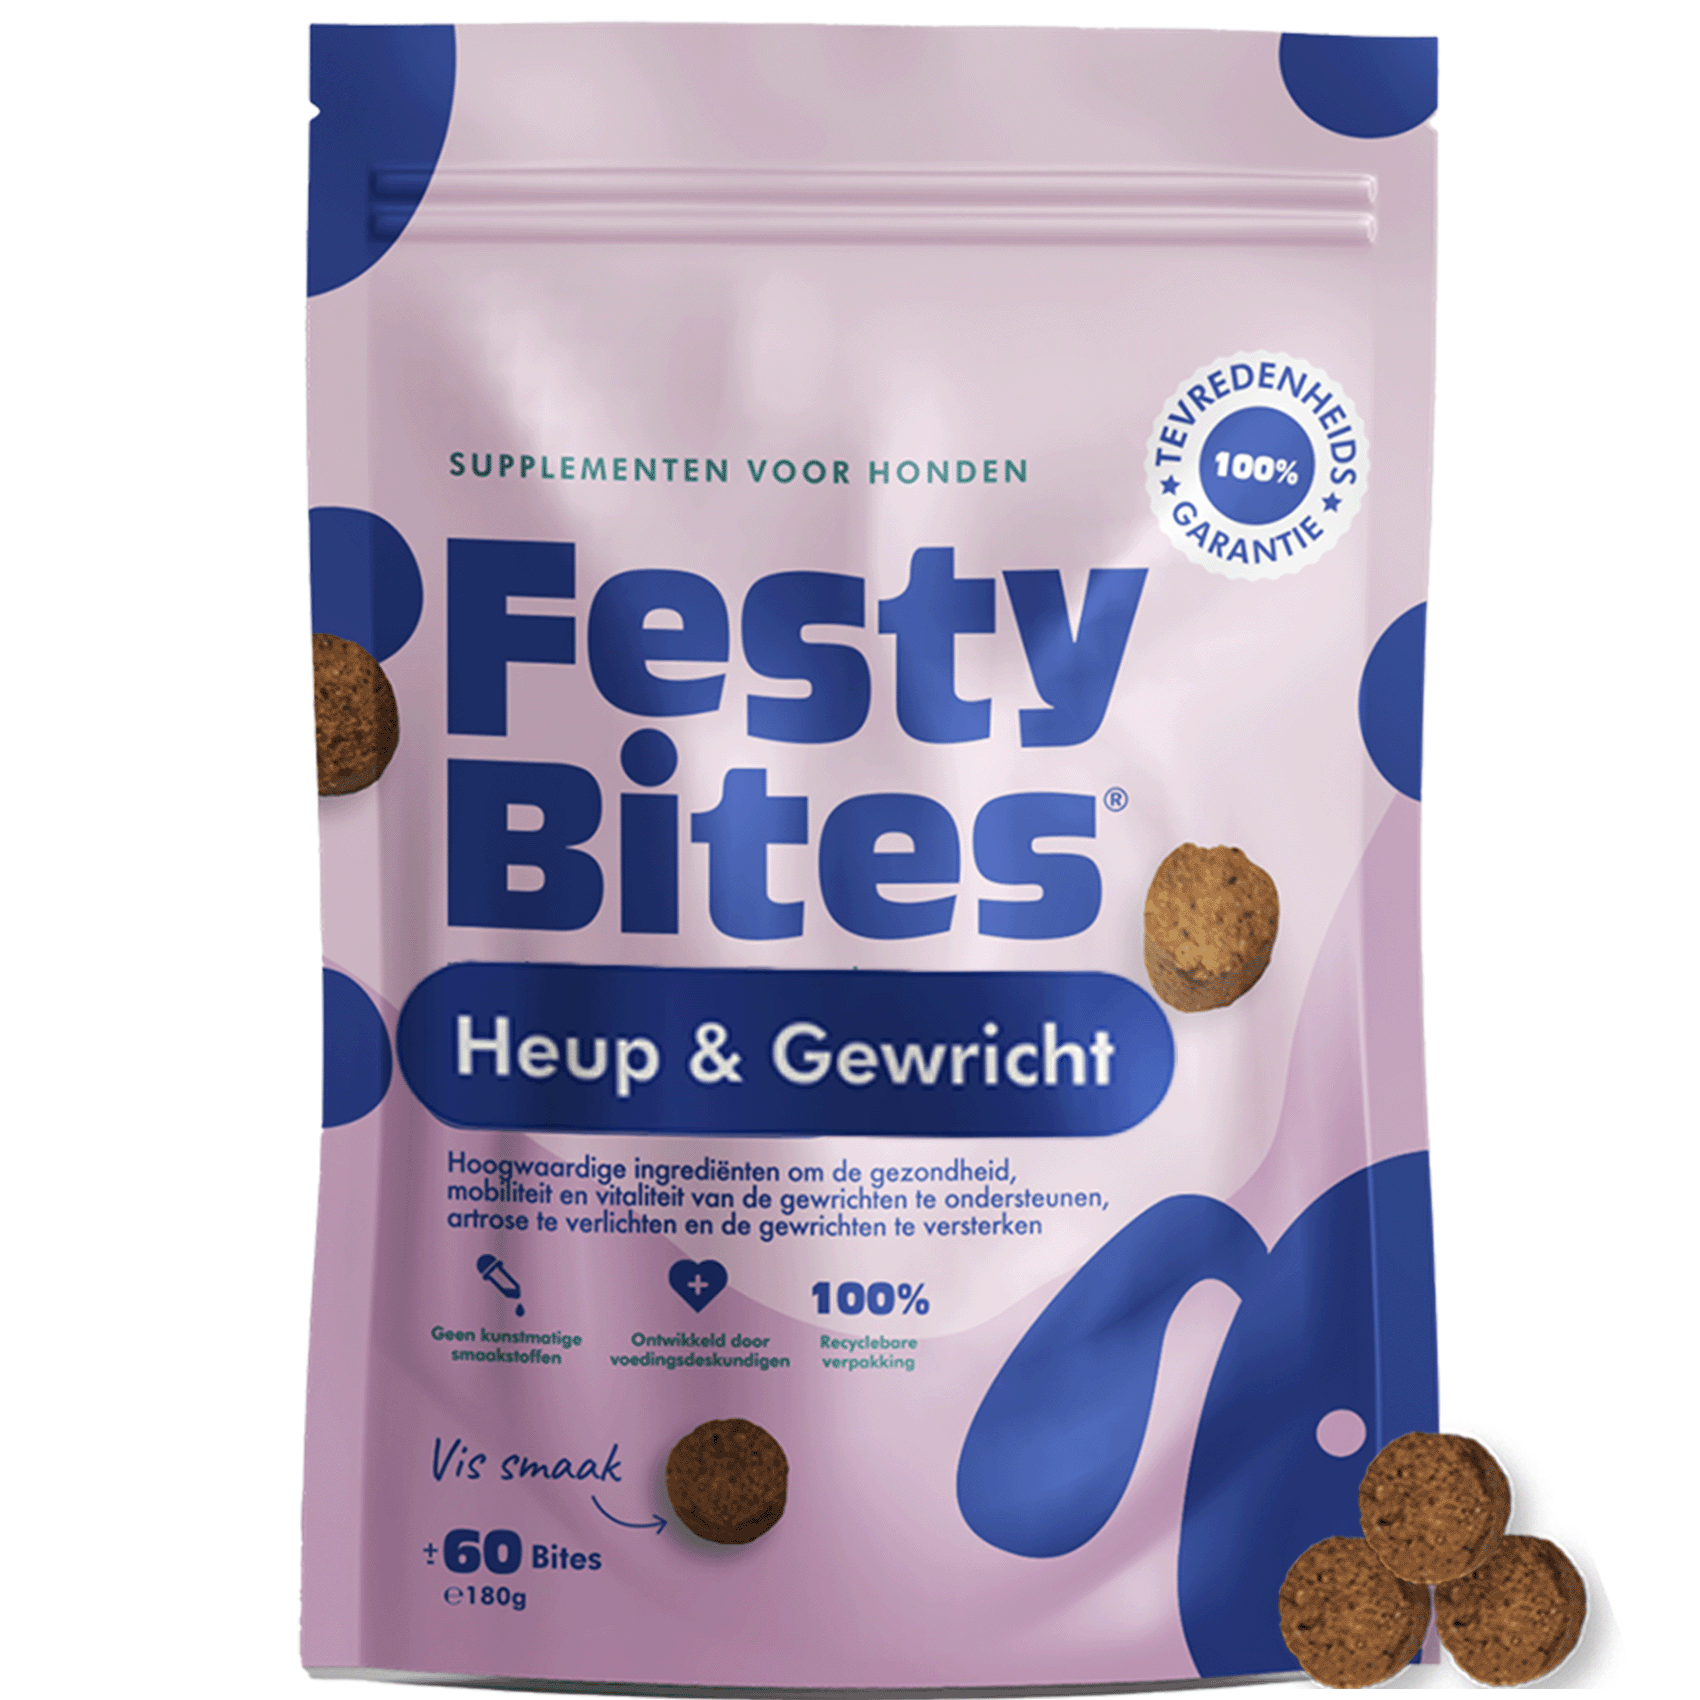 FestyBites® Heup & Gewricht met Glucosamine